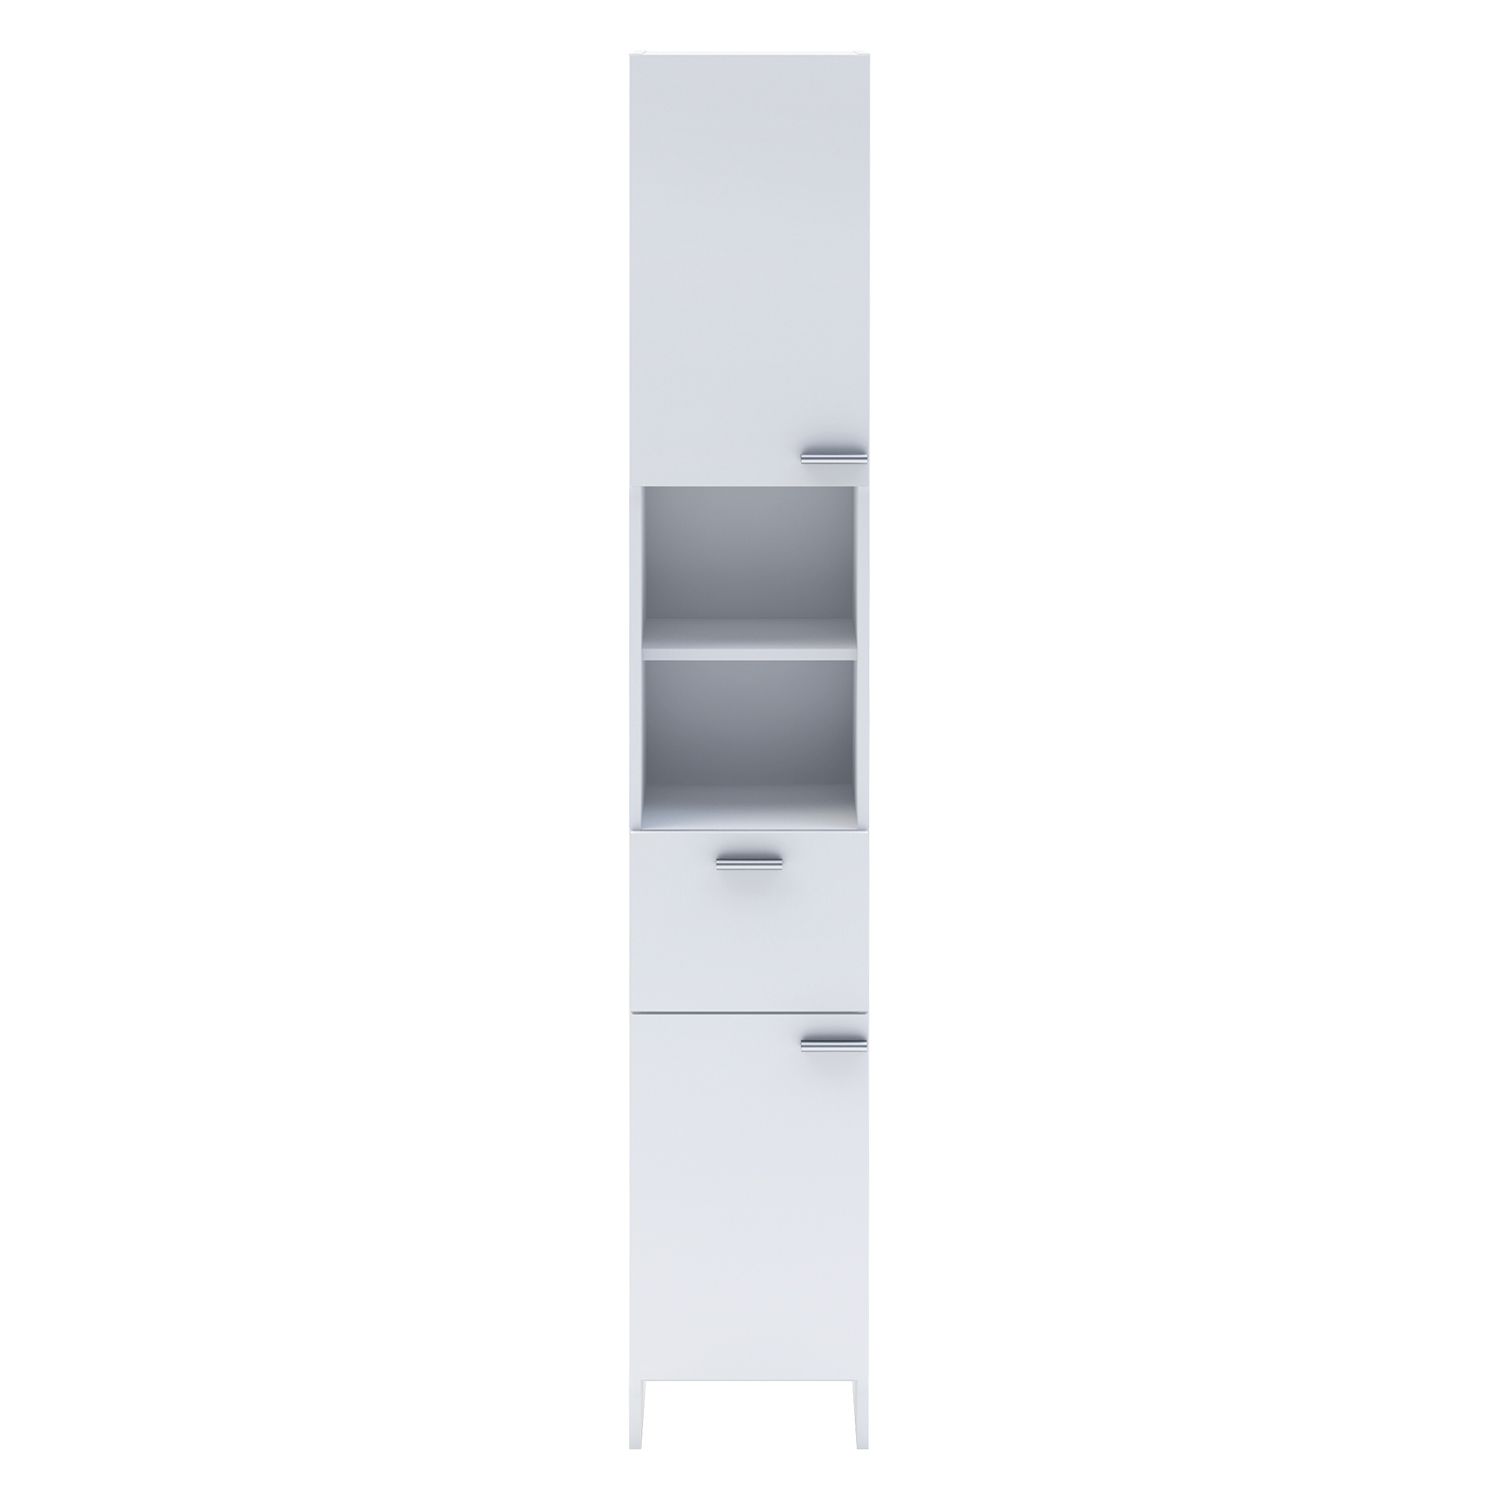 Vysoká skříňka 2 dveře + 1 zásuvka KORAL bílá - IDEA nábytek